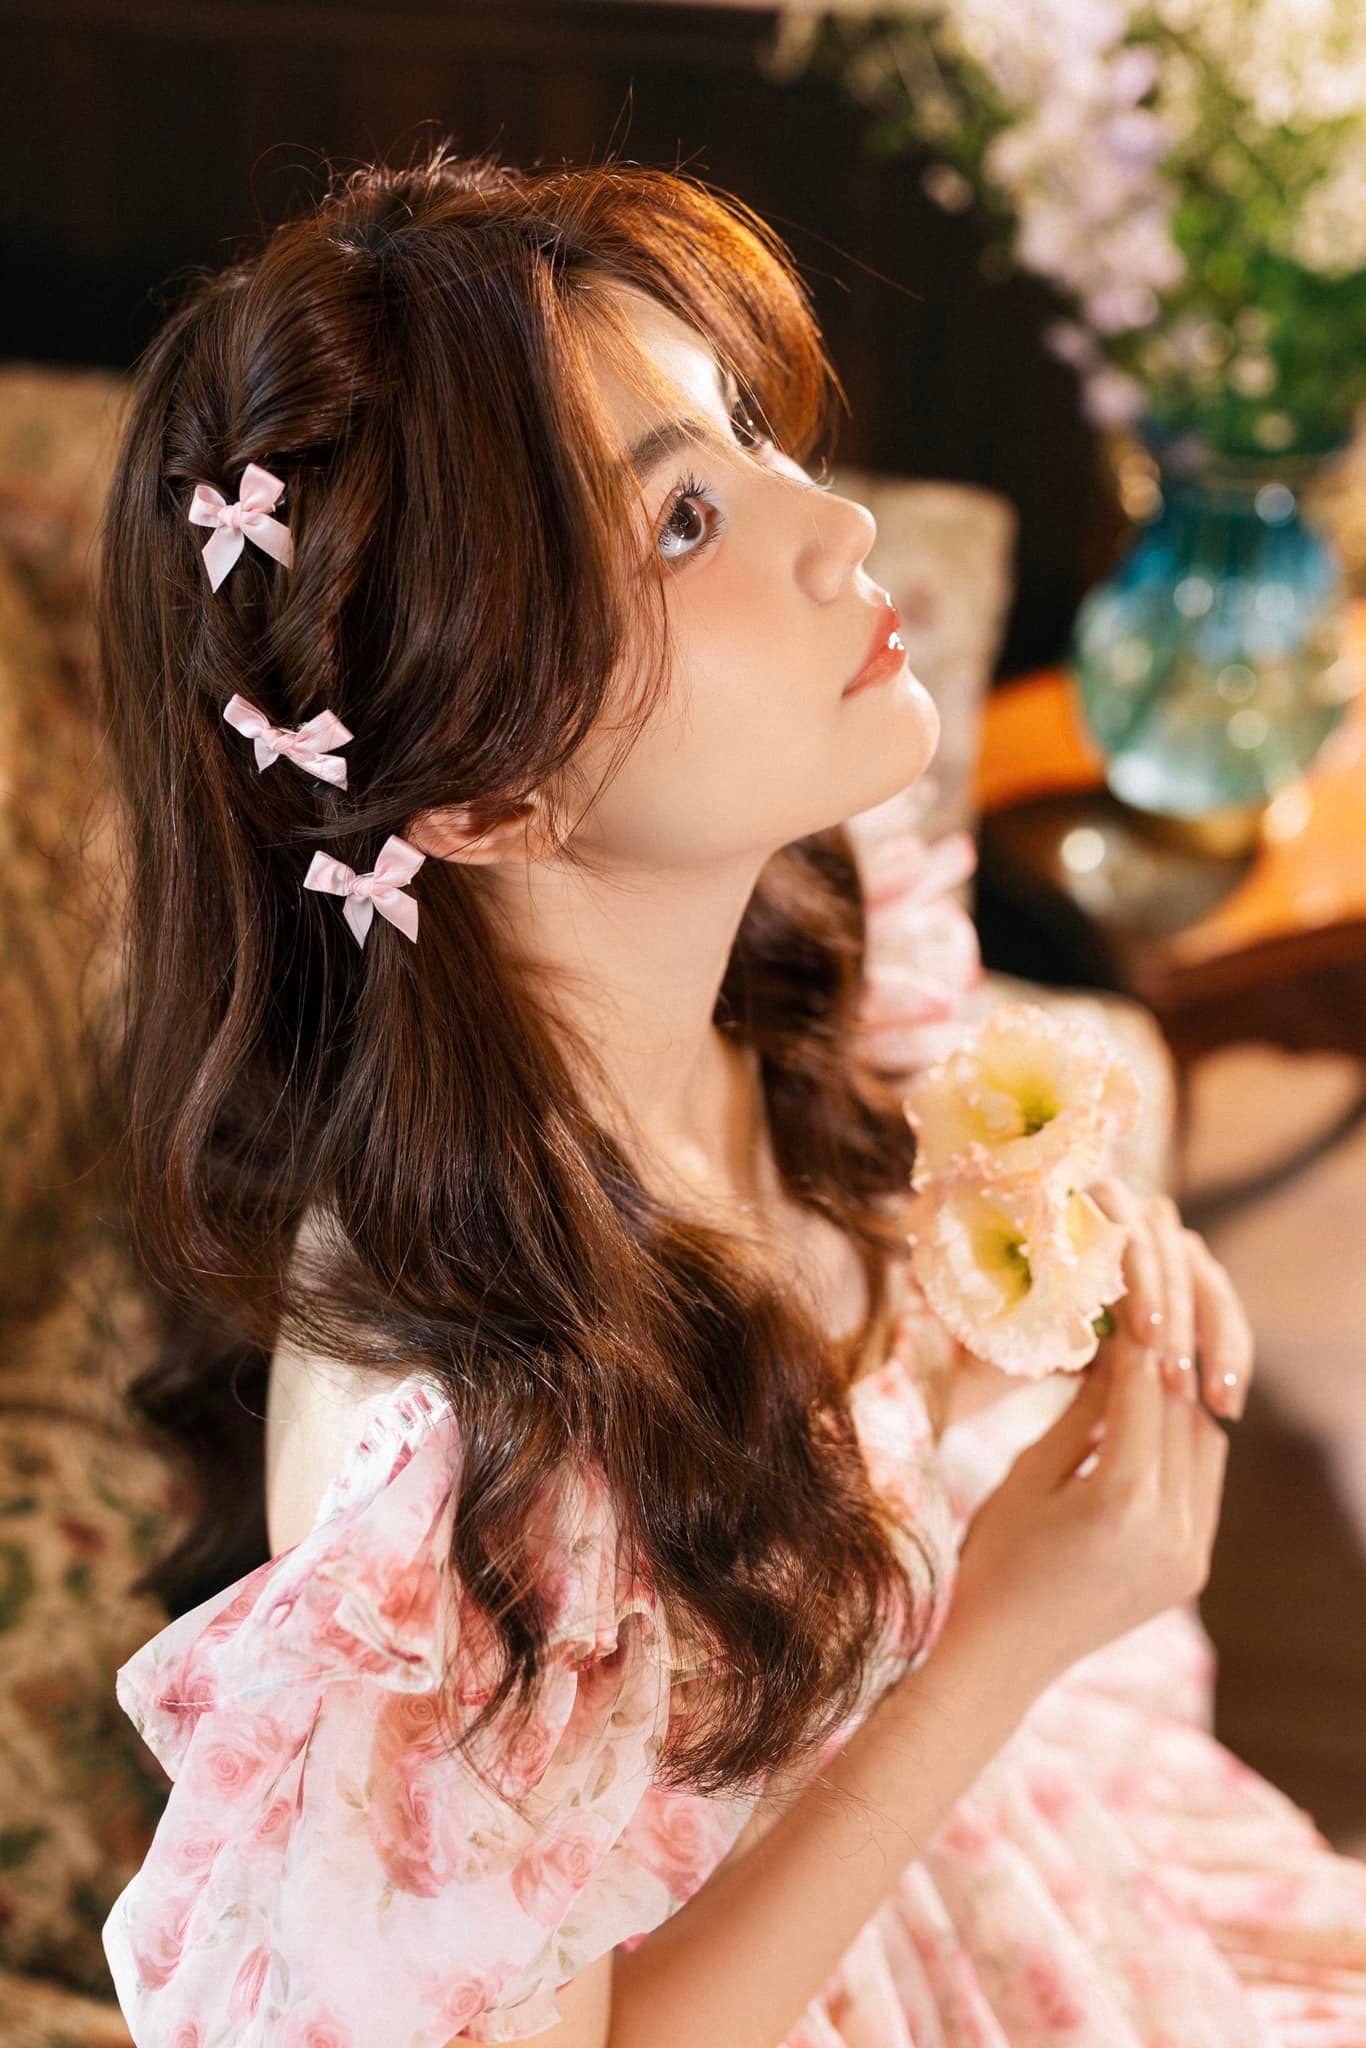 2 con gái của MC Quyền Linh khoe vẻ đẹp xuất sắc, CĐM khen: 'Đây mới là nhan sắc Hoa hậu' - ảnh 8